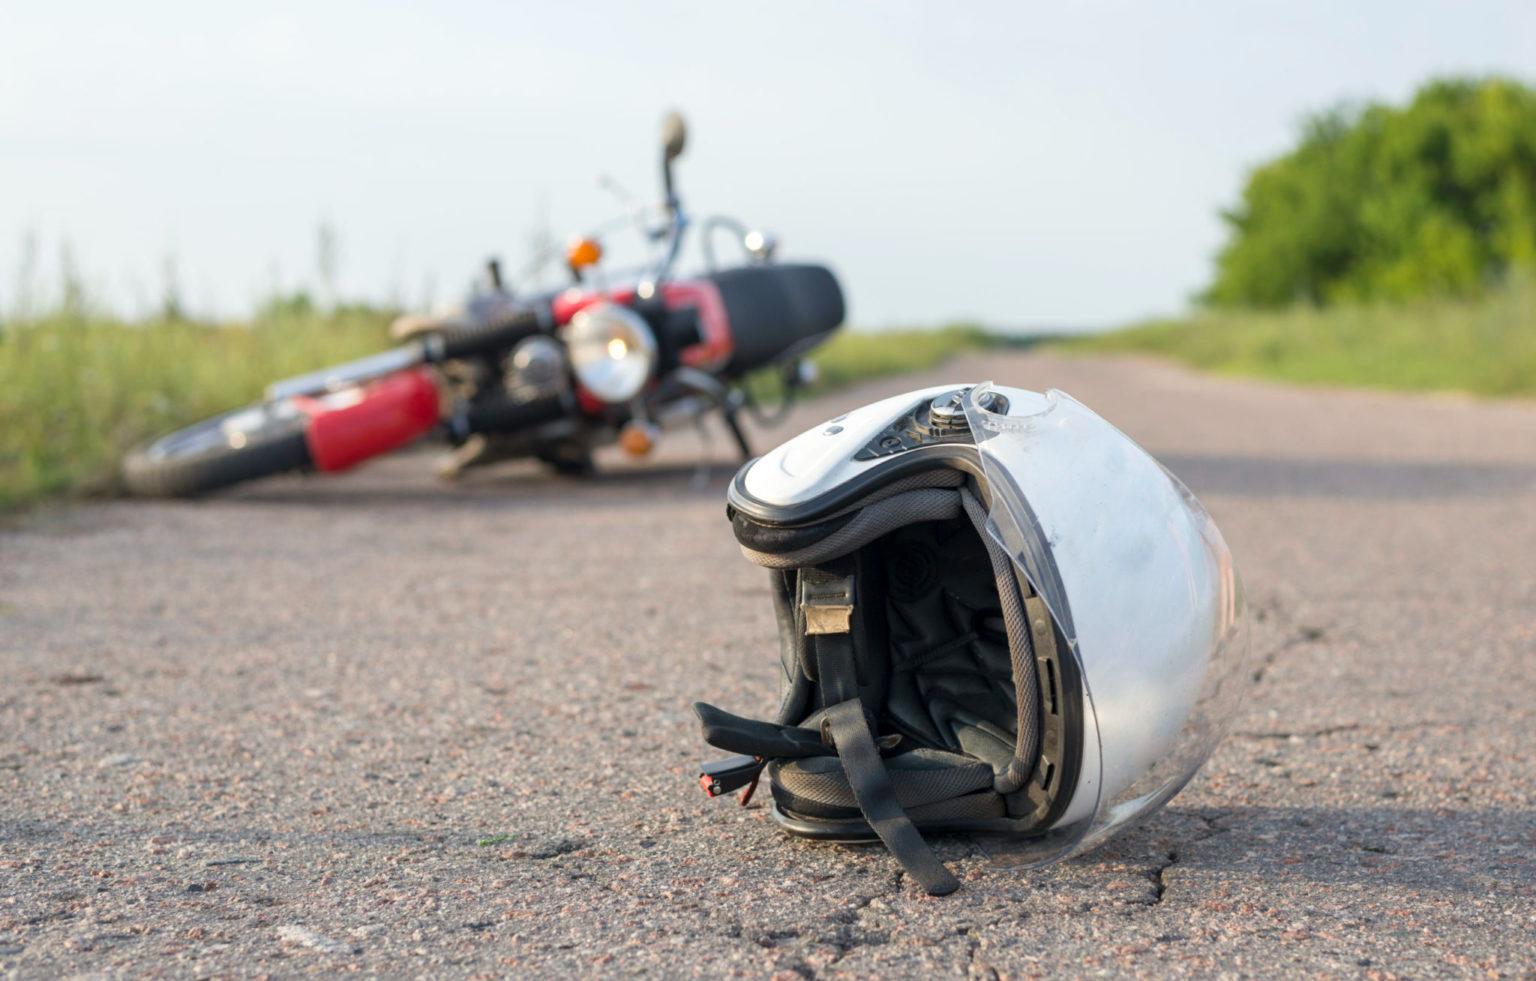 18-летний мотоциклист без прав «догнал» на дороге легковушку